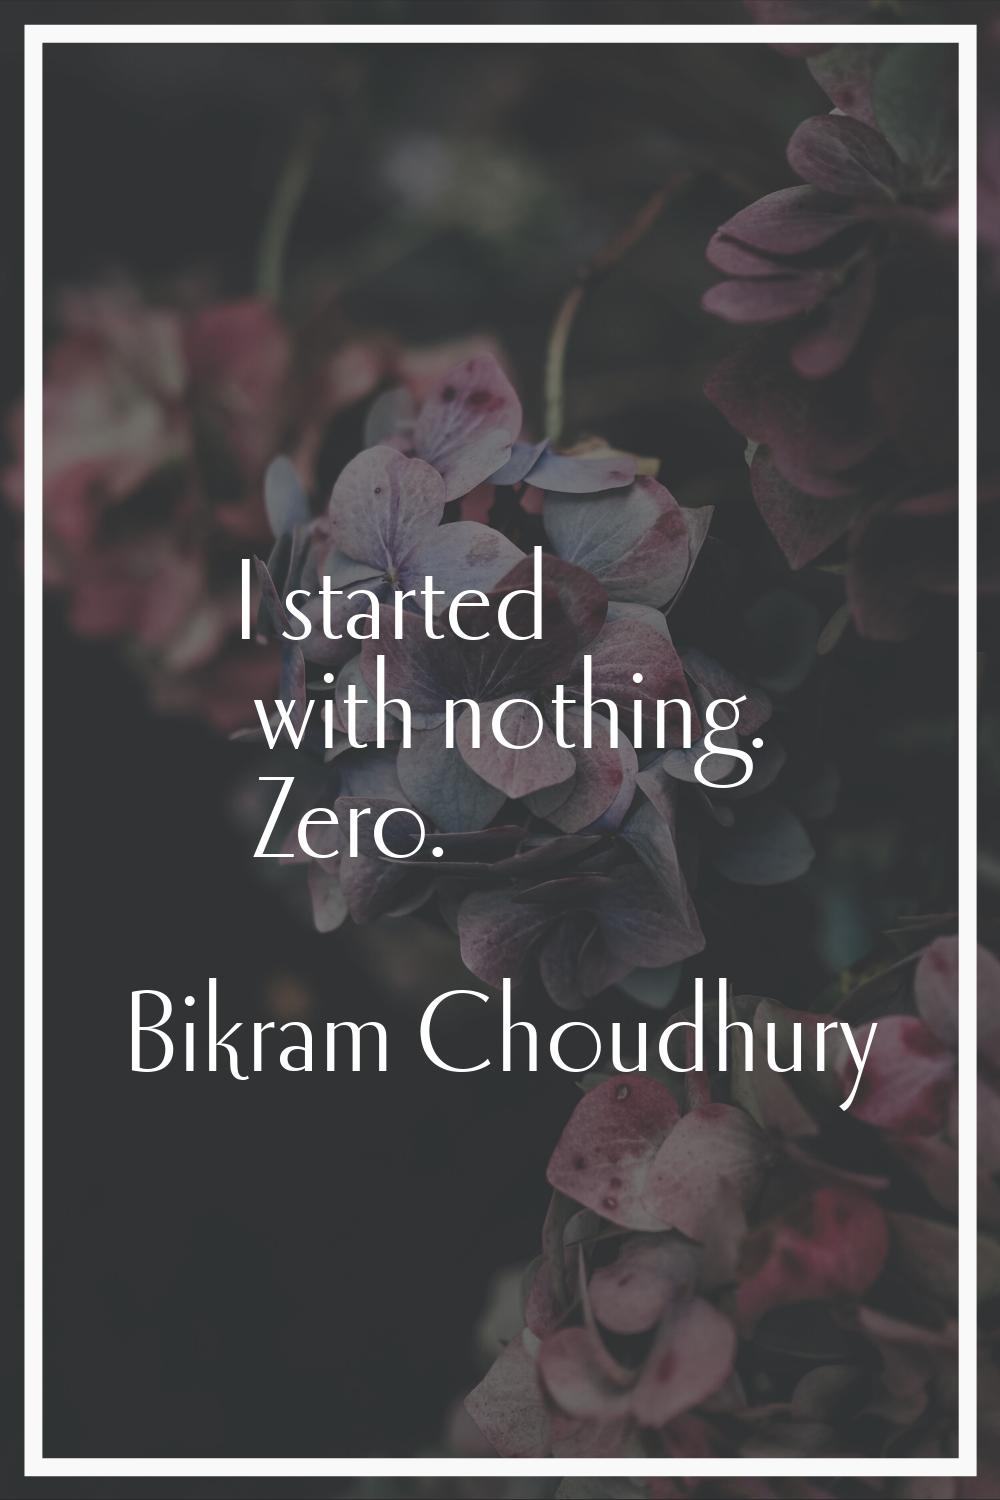 I started with nothing. Zero.